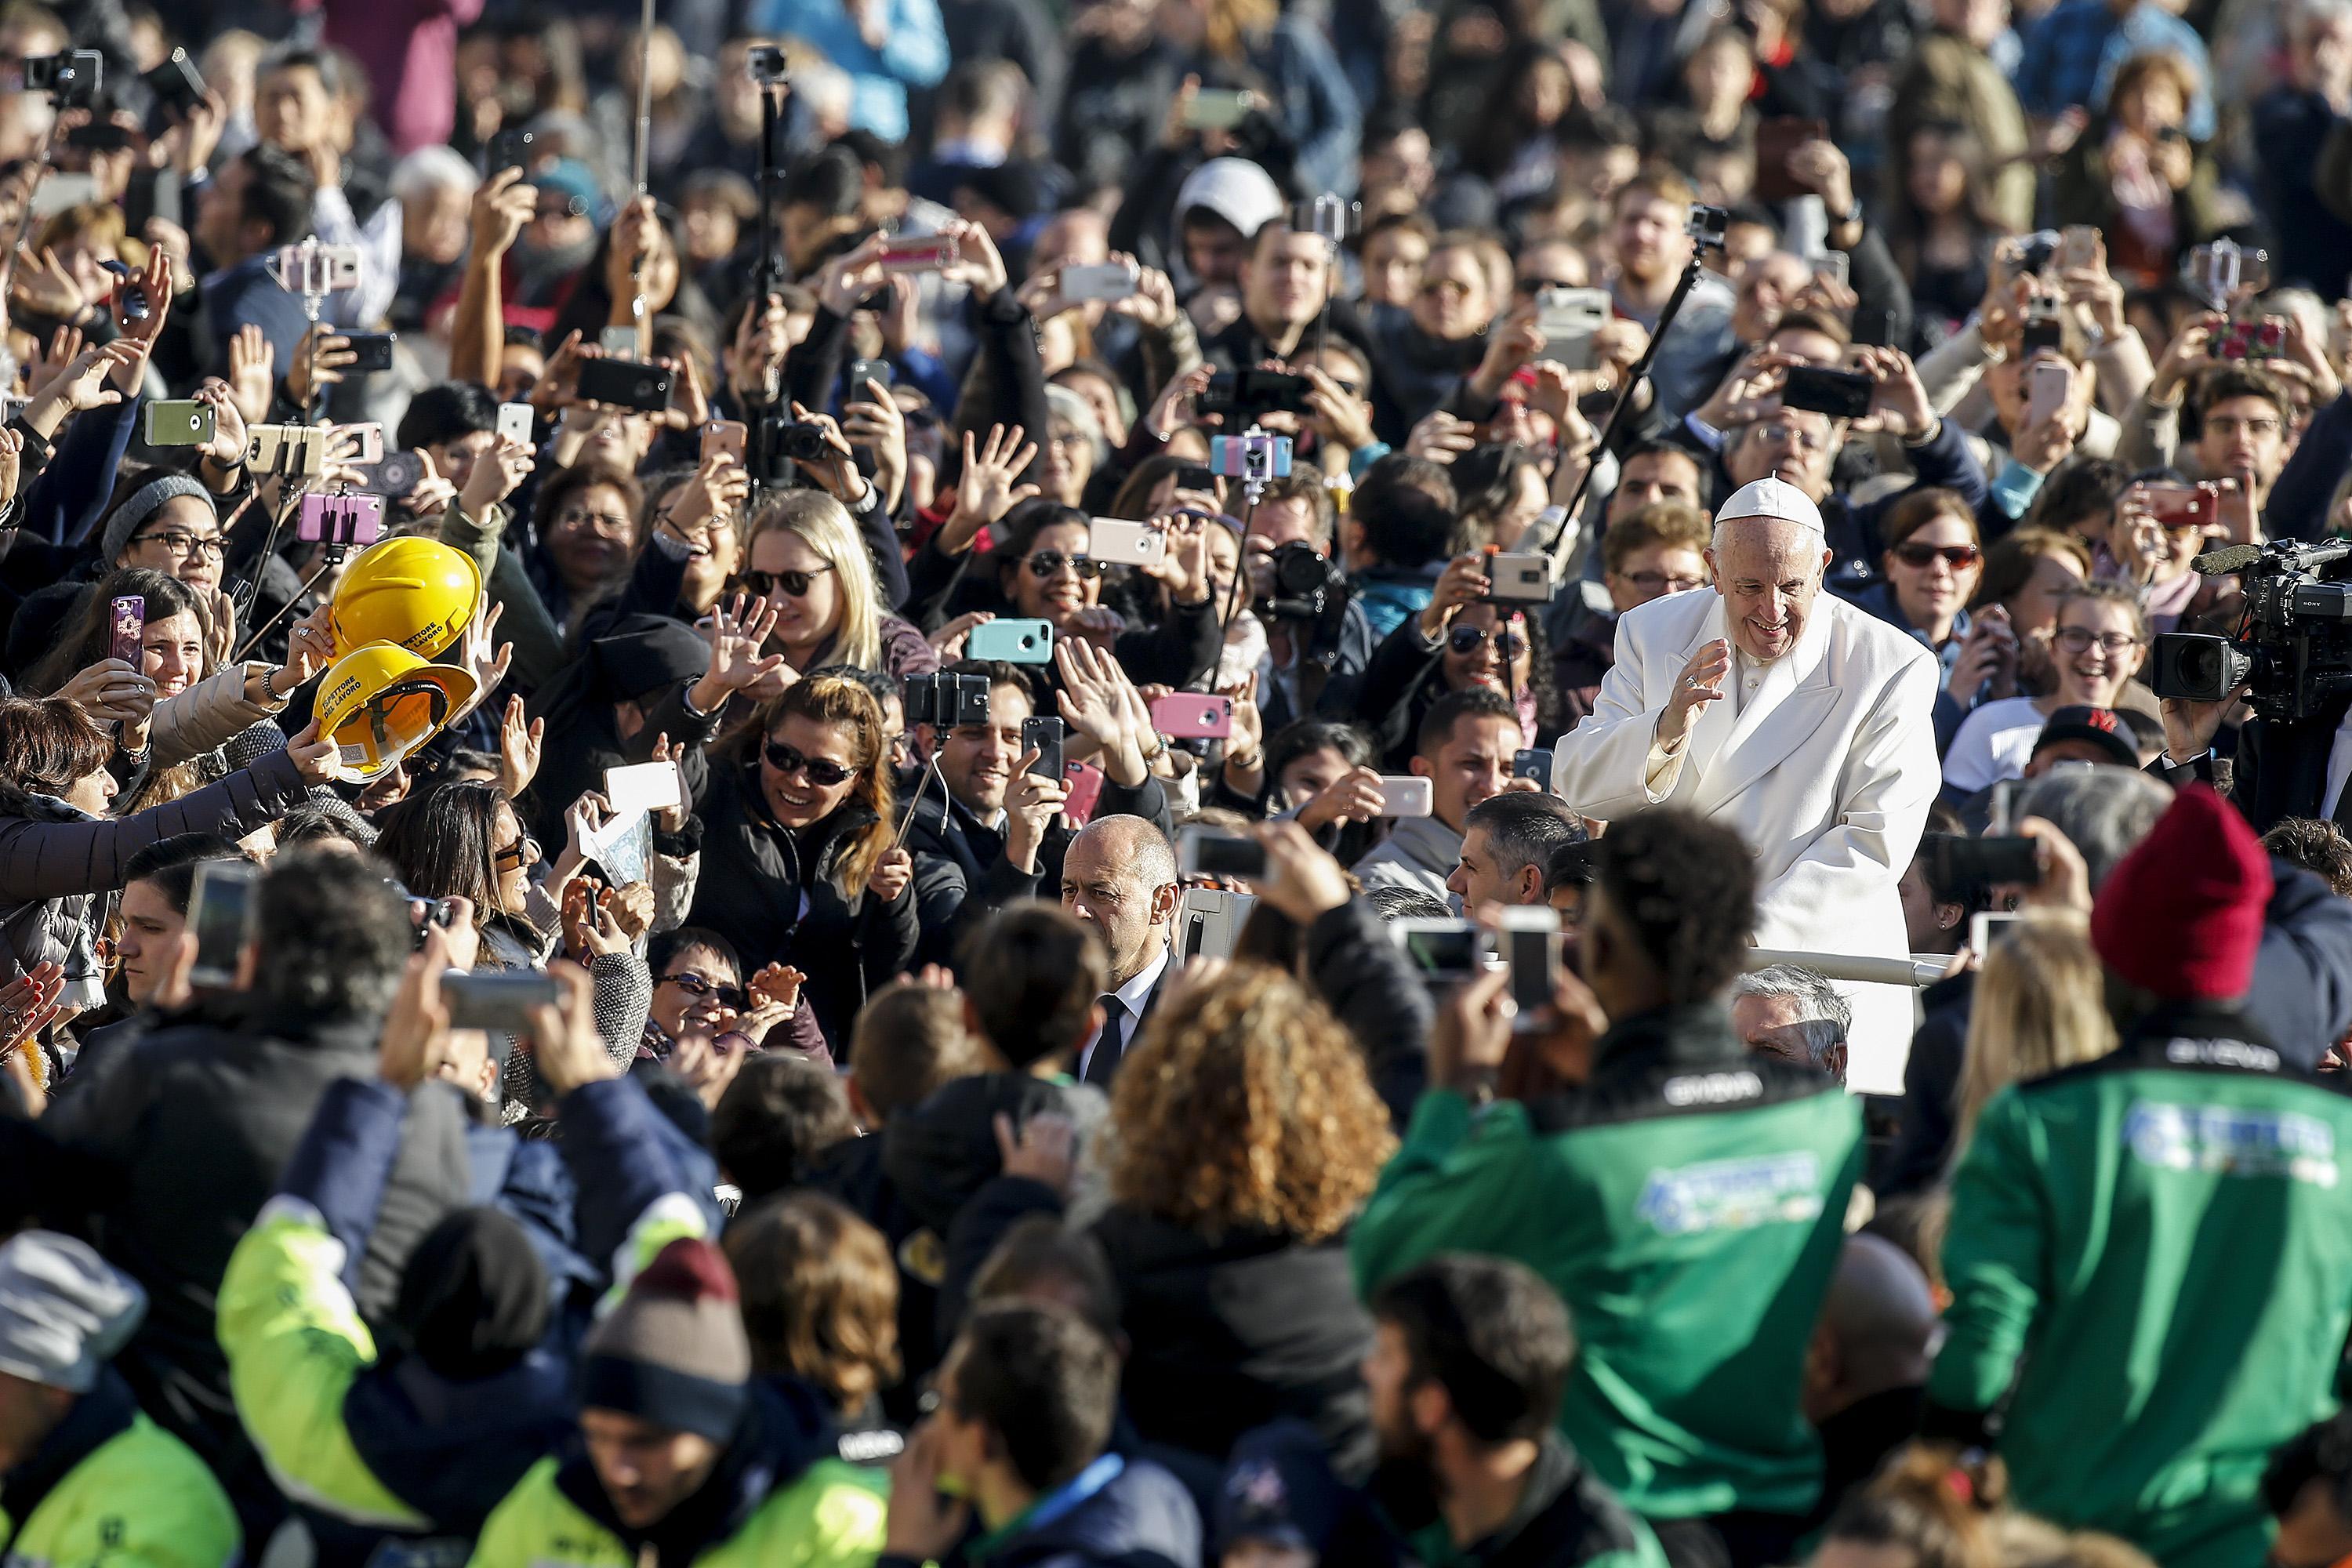 Bergoglio attraversa la piazza a bordo della Papamobile